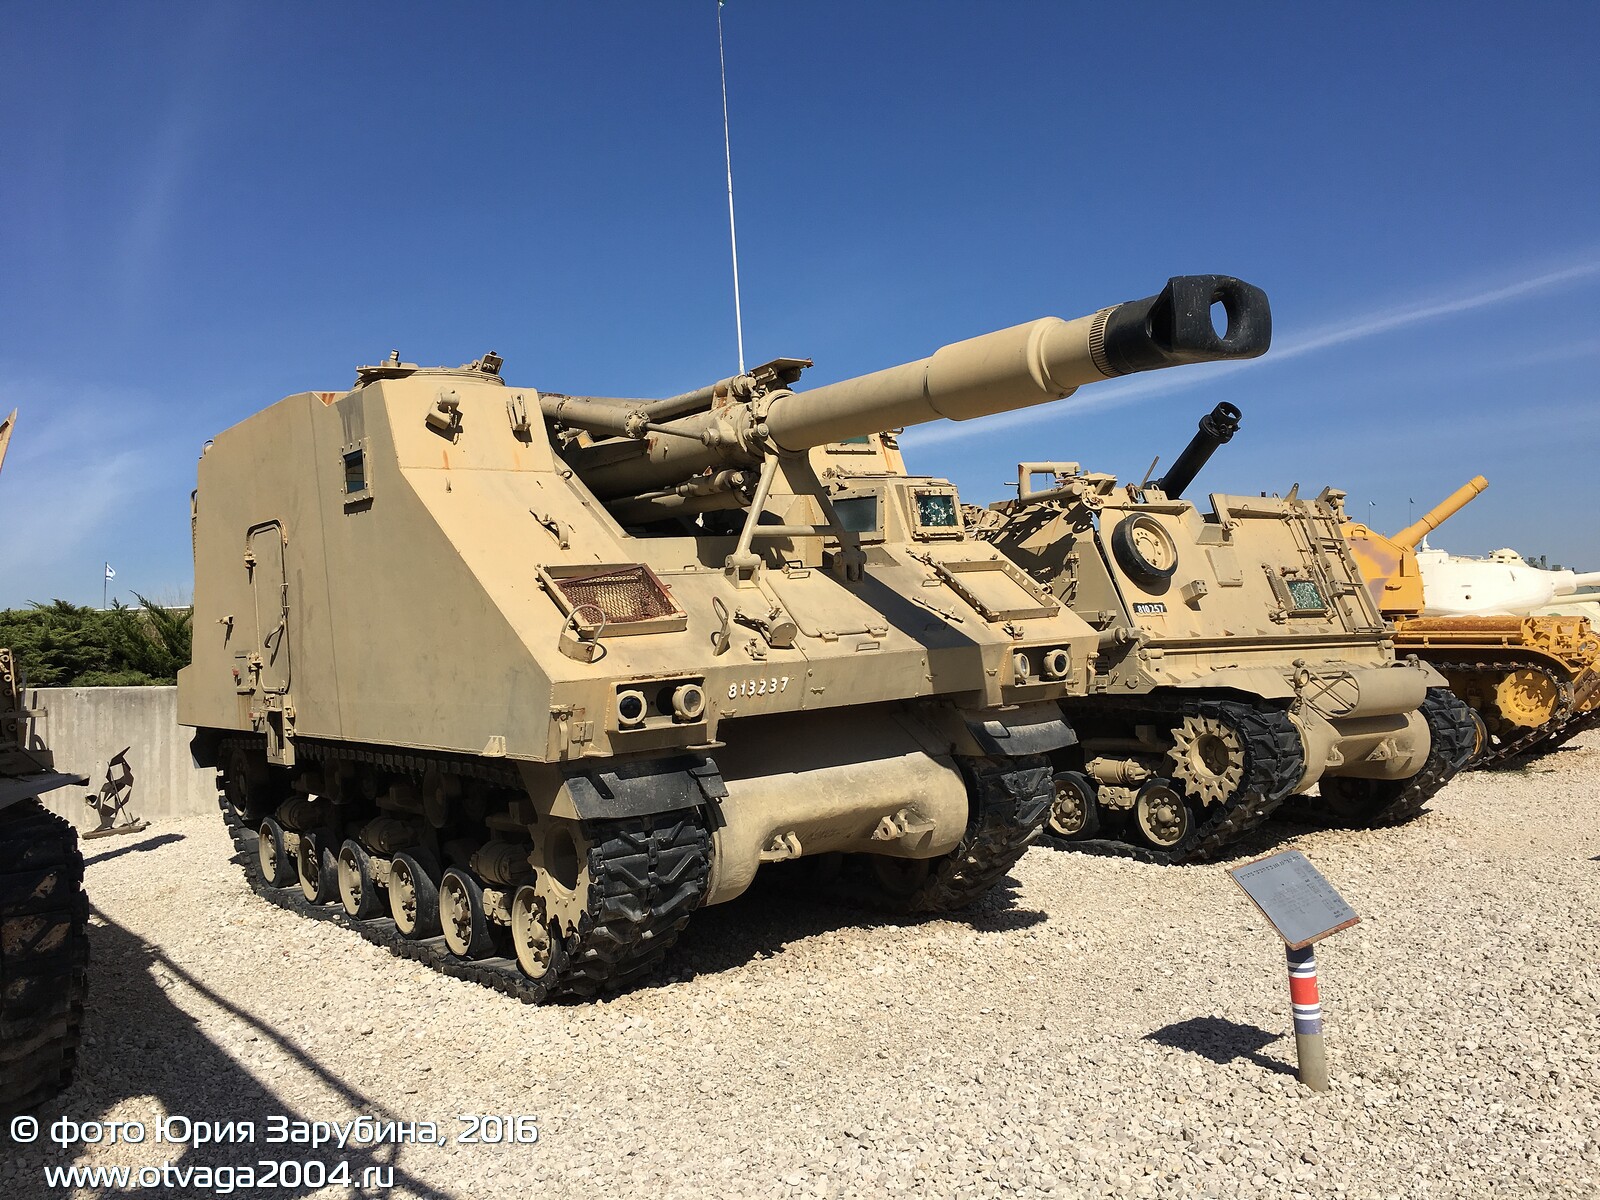 Музей танковых войск в Израиле - фотообзор, часть 1